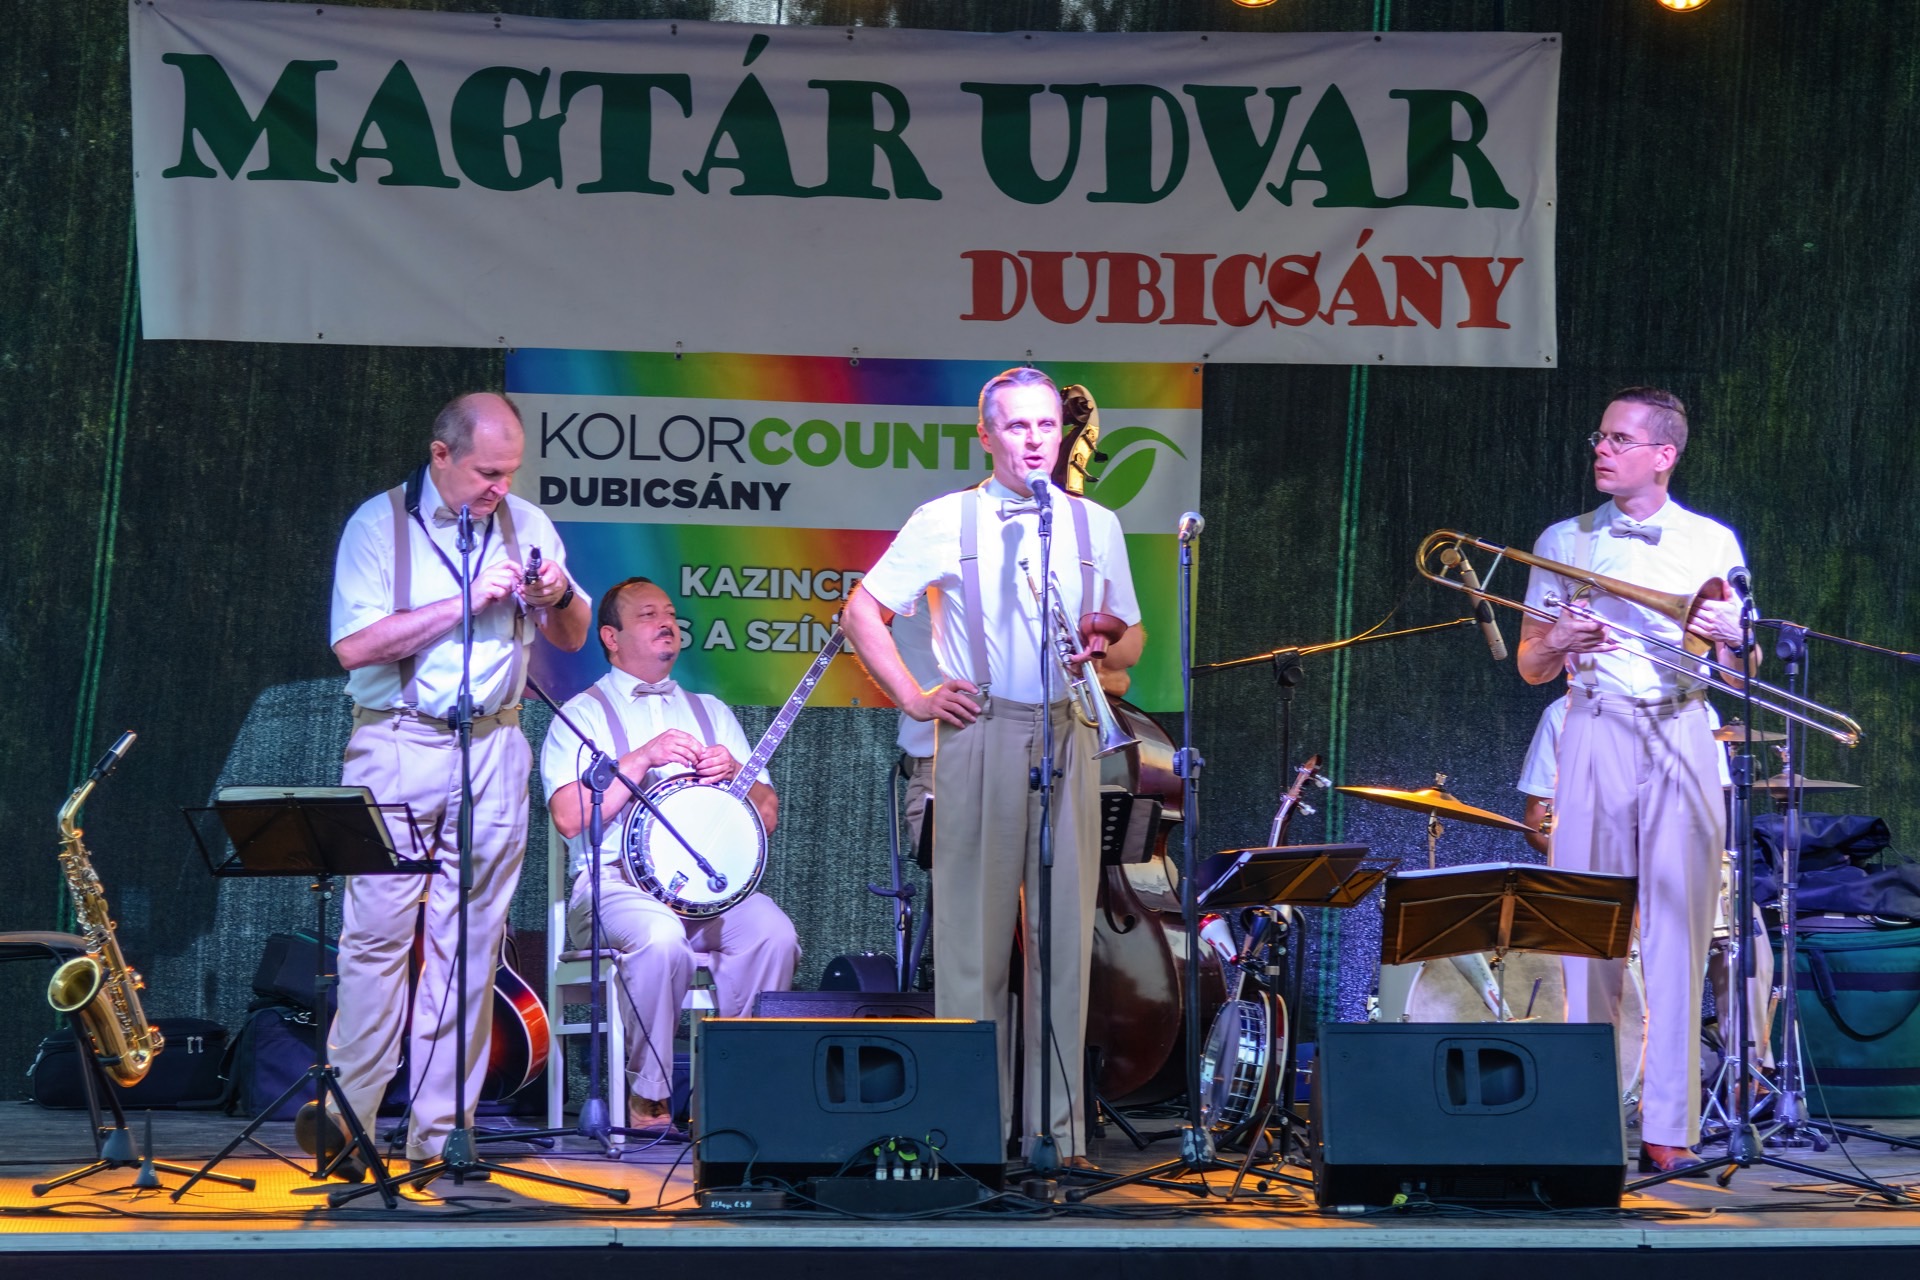 Magtár kiállításmegnyitó és Hot Jazz Band koncert (Dubicsány) - Kolorfesztivál